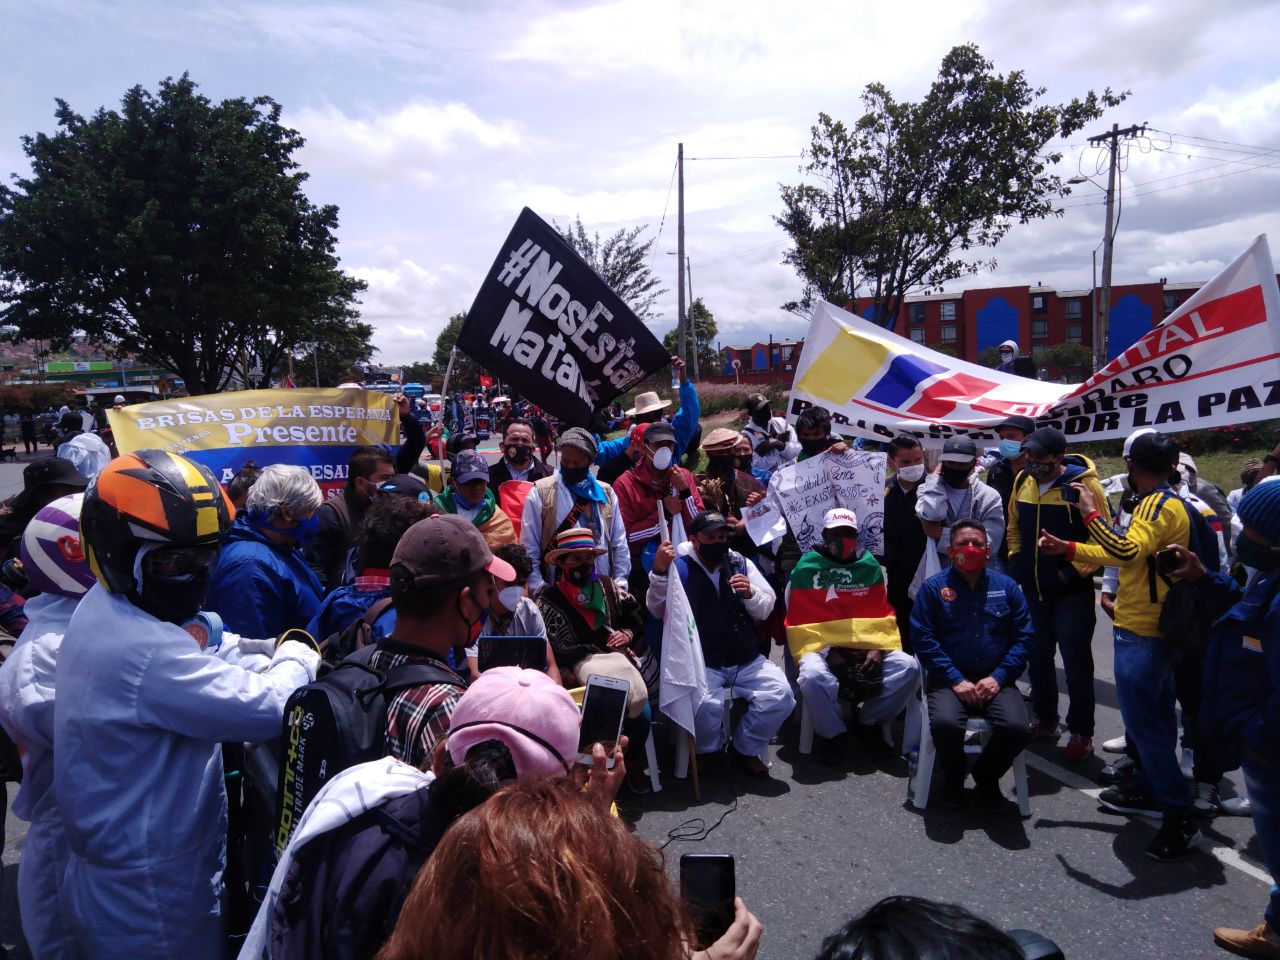 Los movimientos alrededor de la Farc han denunciado en las últimas semanas los incumplimientos de los acuerdos de paz por parte del Estado colombiano.